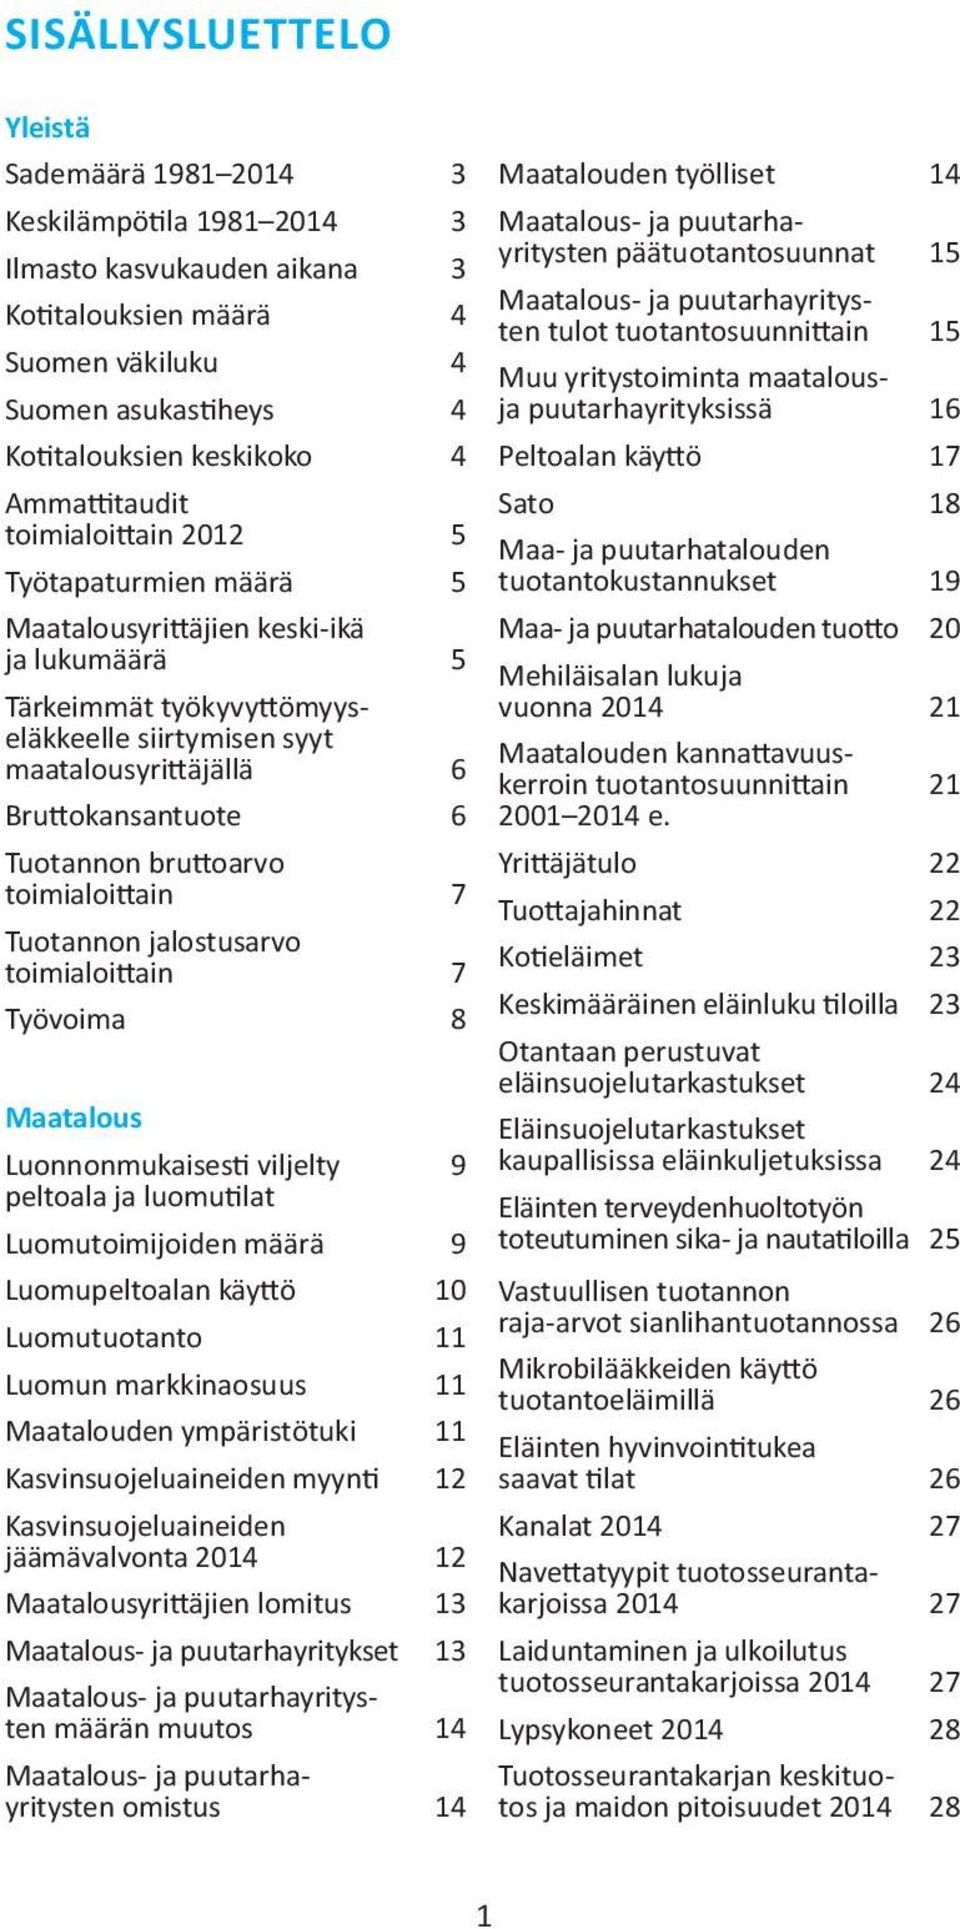 Peltoalan käyttö 17 Sato 18 Ammattitaudit toimialoittain 2012 5 Työtapaturmien määrä 5 Maatalousyrittäjien keski-ikä ja lukumäärä 5 Tärkeimmät työkyvyttömyyseläkkeelle siirtymisen syyt